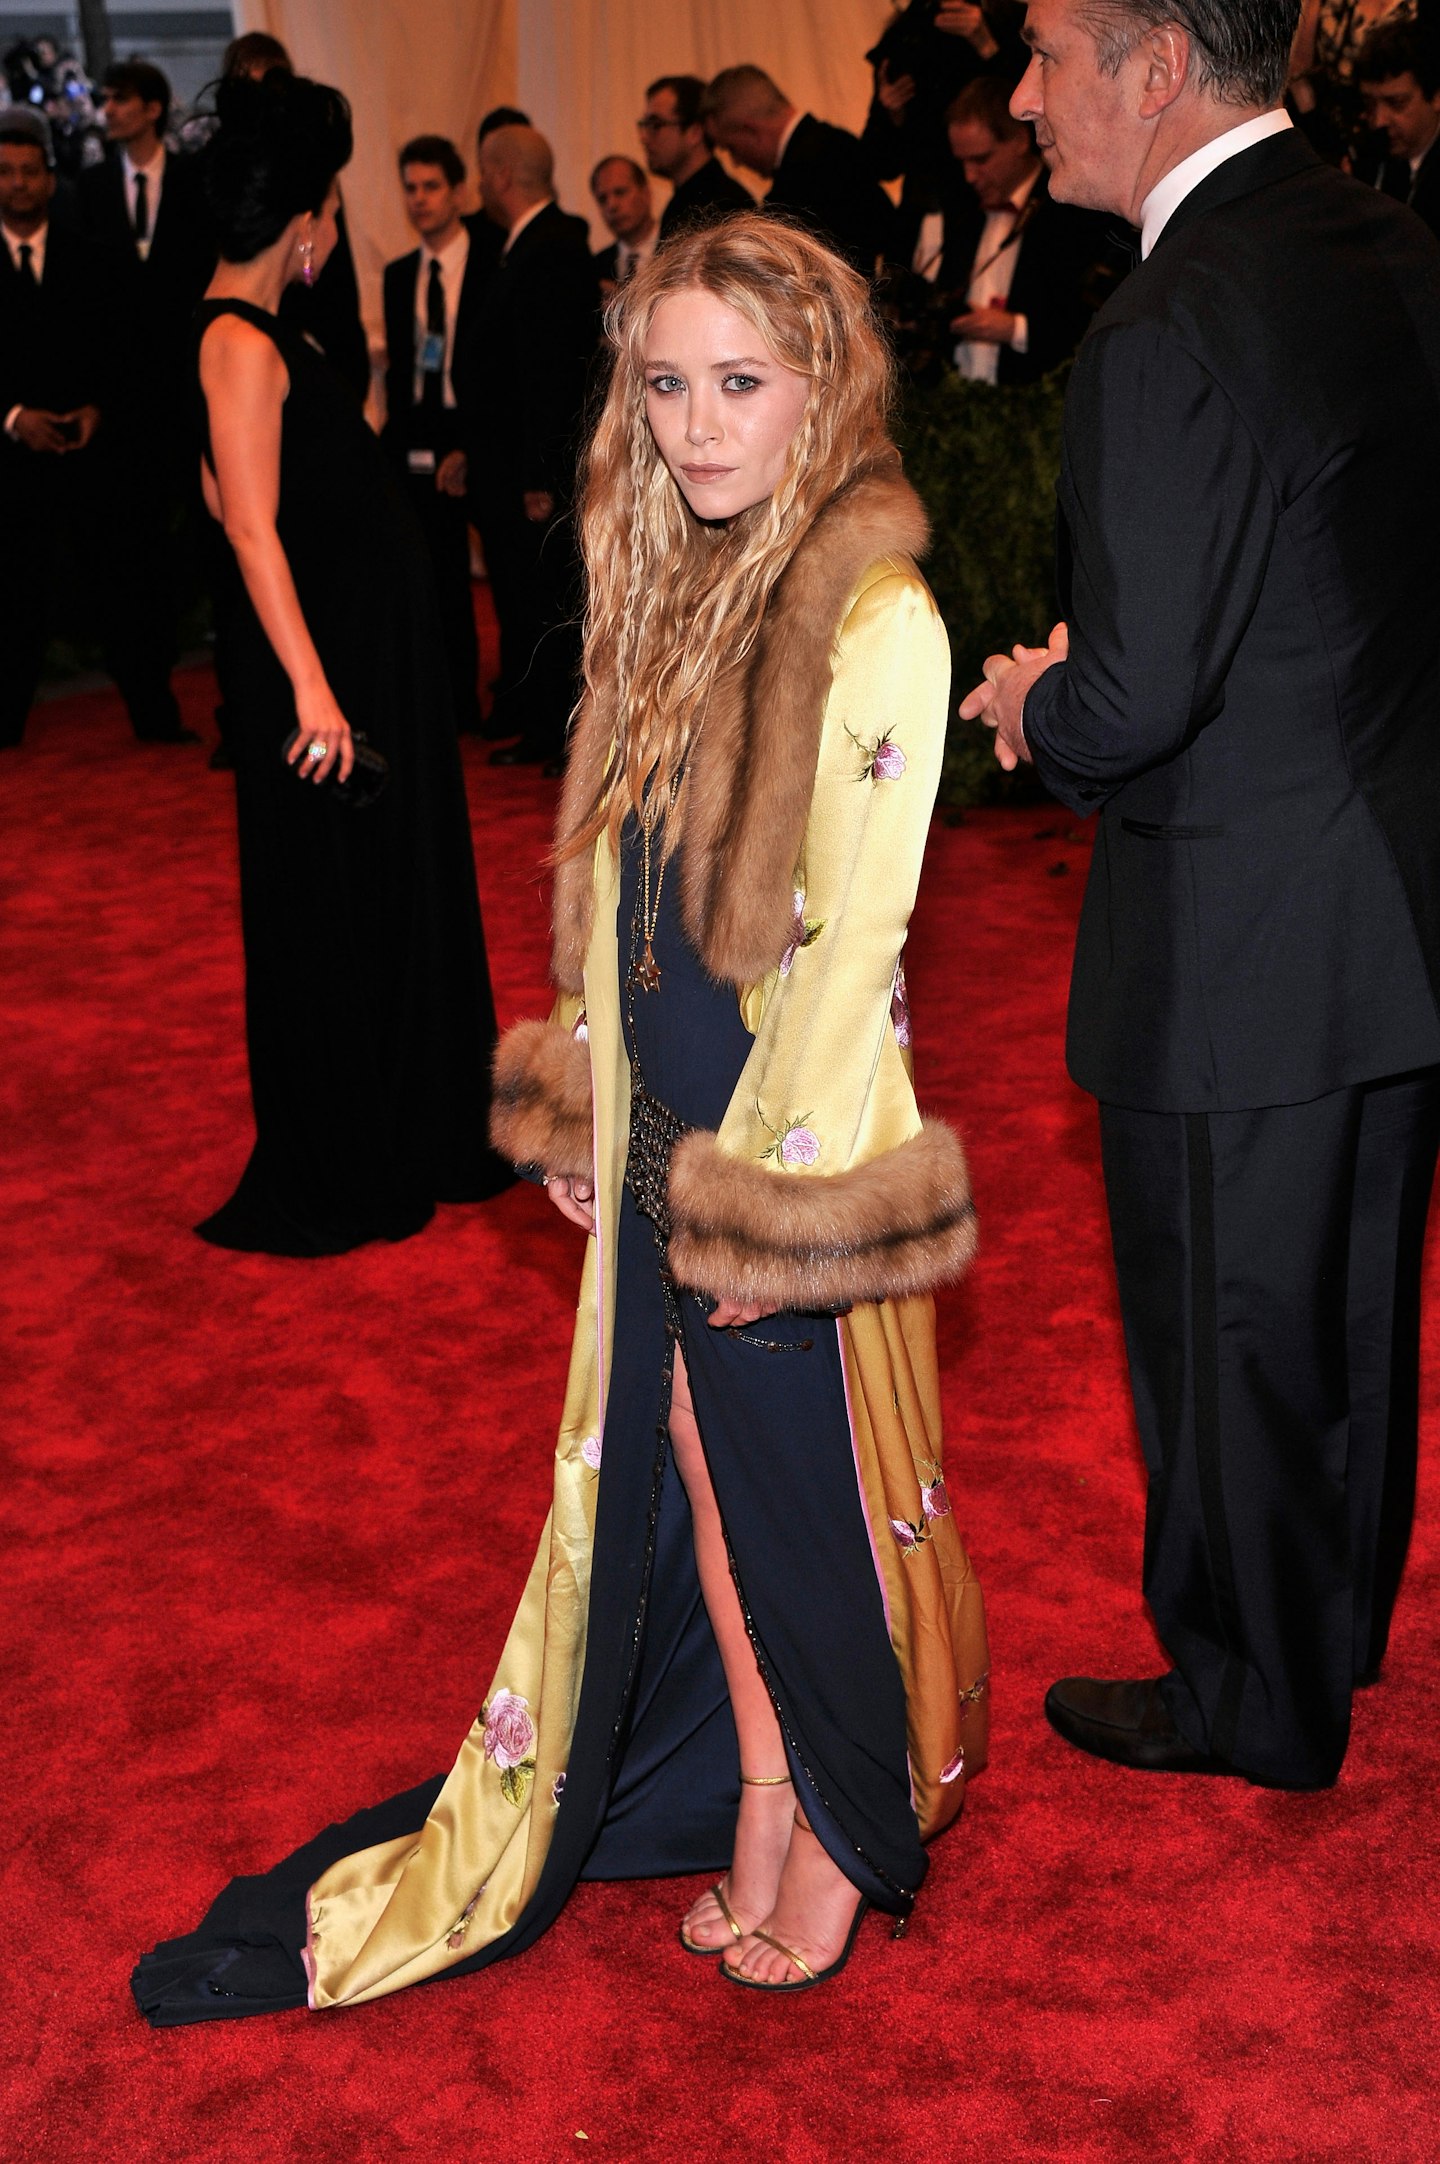 Mary-Kate Olsen at the 2013 Met Gala